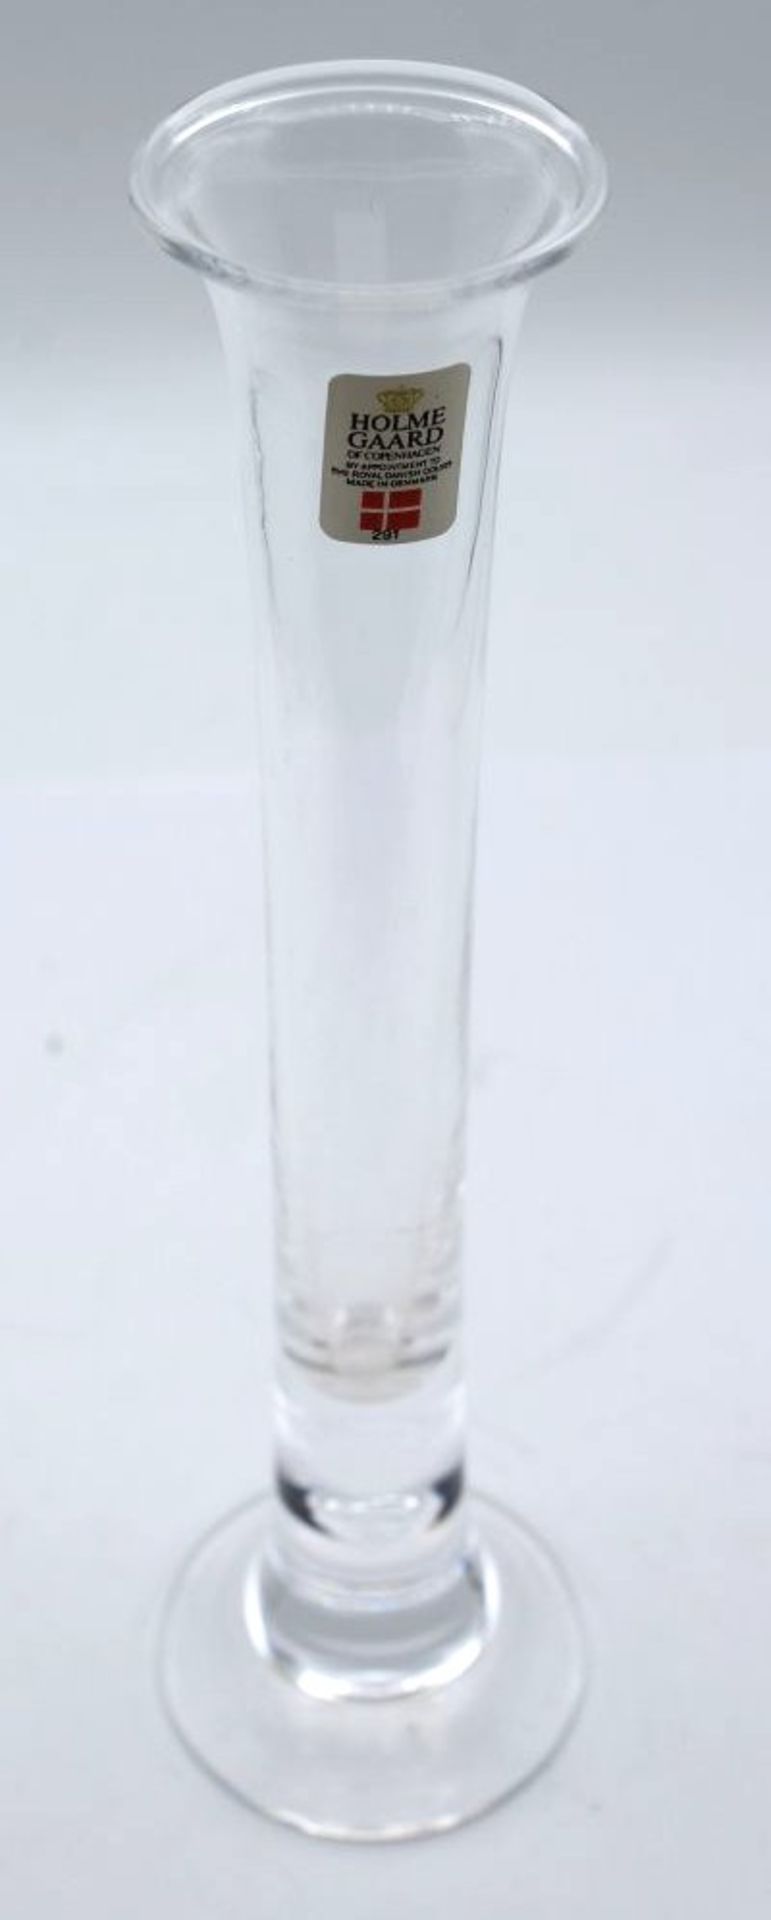 Stiel-Vase, Holmegaard, farbloses Glas, H-21cm.- - -22.61 % buyer's premium on the hammer priceVAT - Bild 2 aus 2